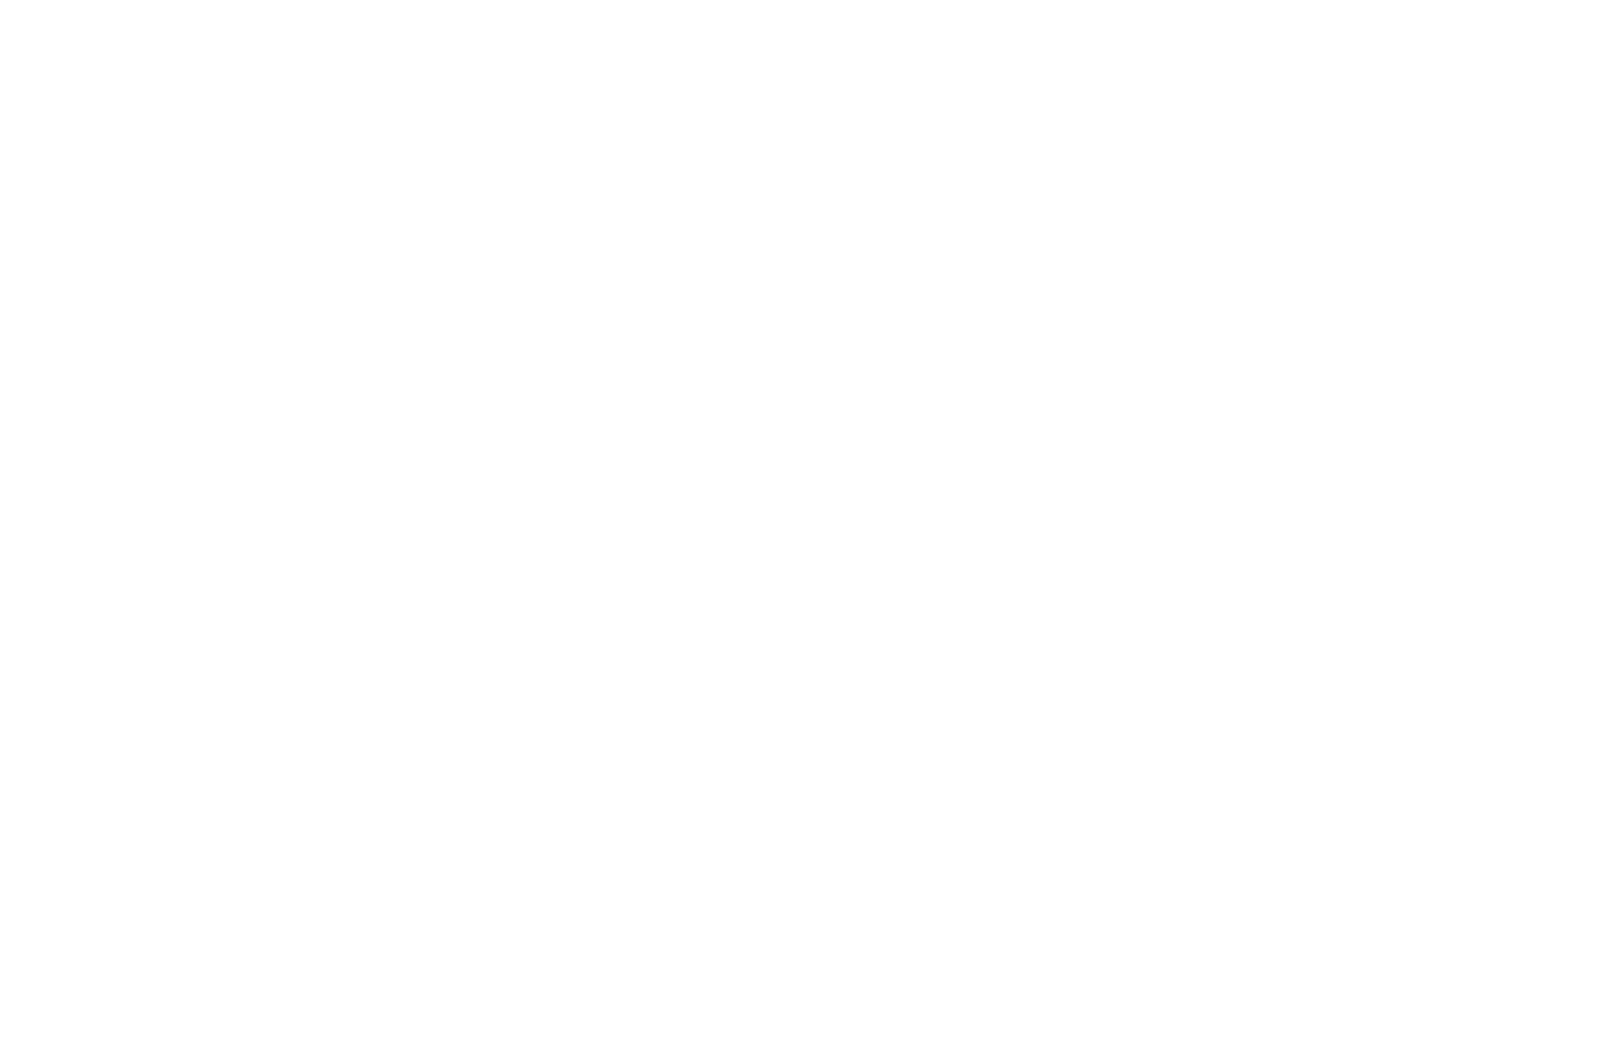 ビッケブランカ 大人気アニメ「ブラッククローバー」OP曲を書き下ろしサムネイル画像!